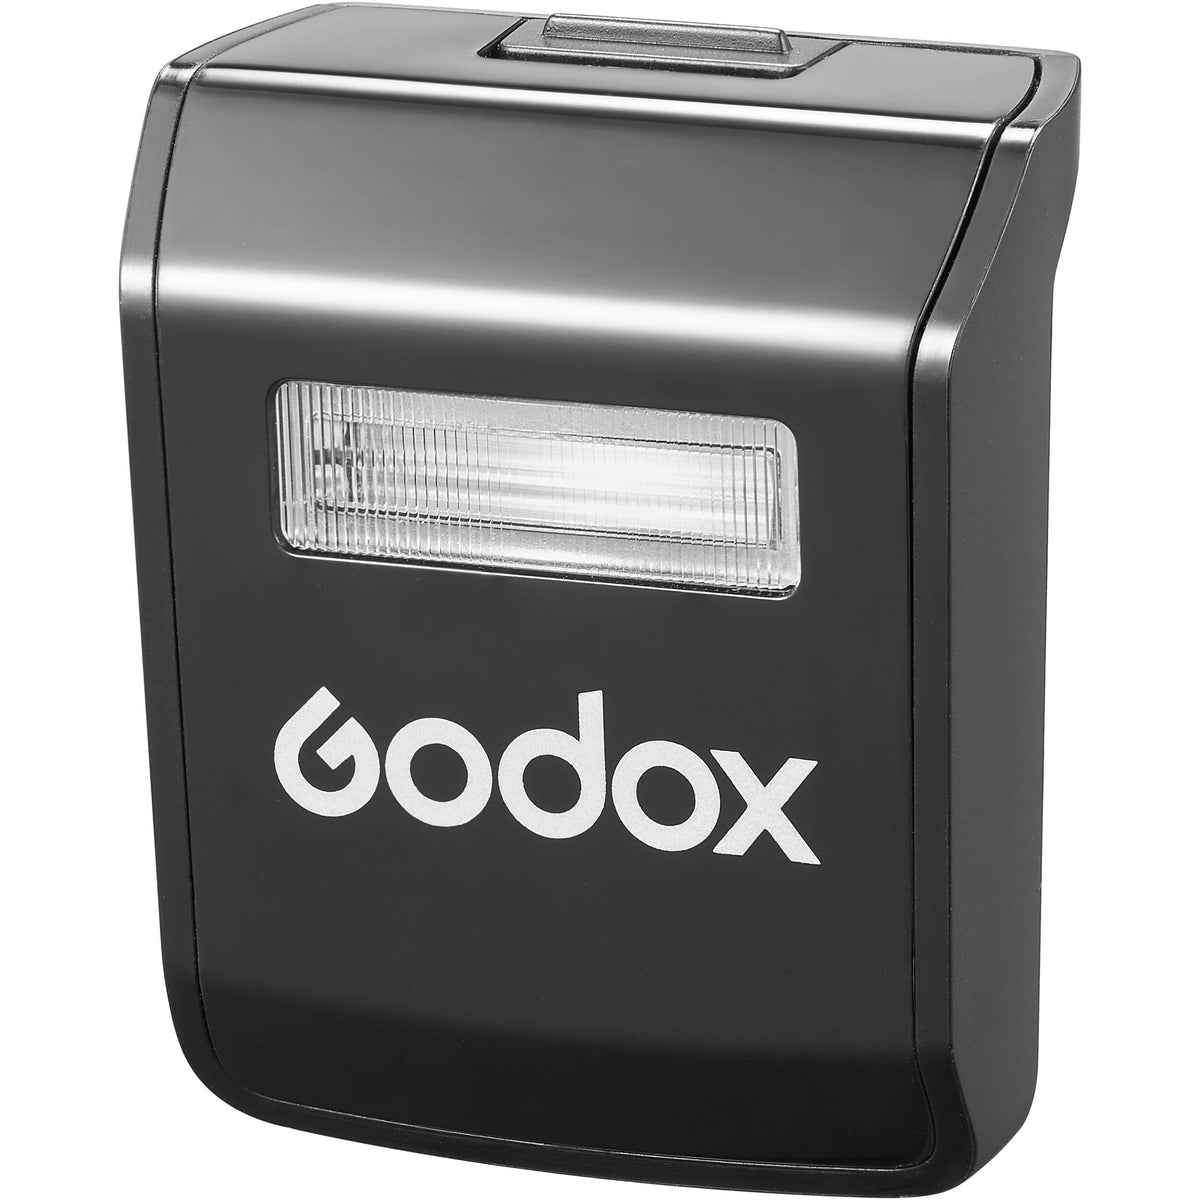 Godox Flash Tips: Managing Misfires - Strobepro Studio Lighting